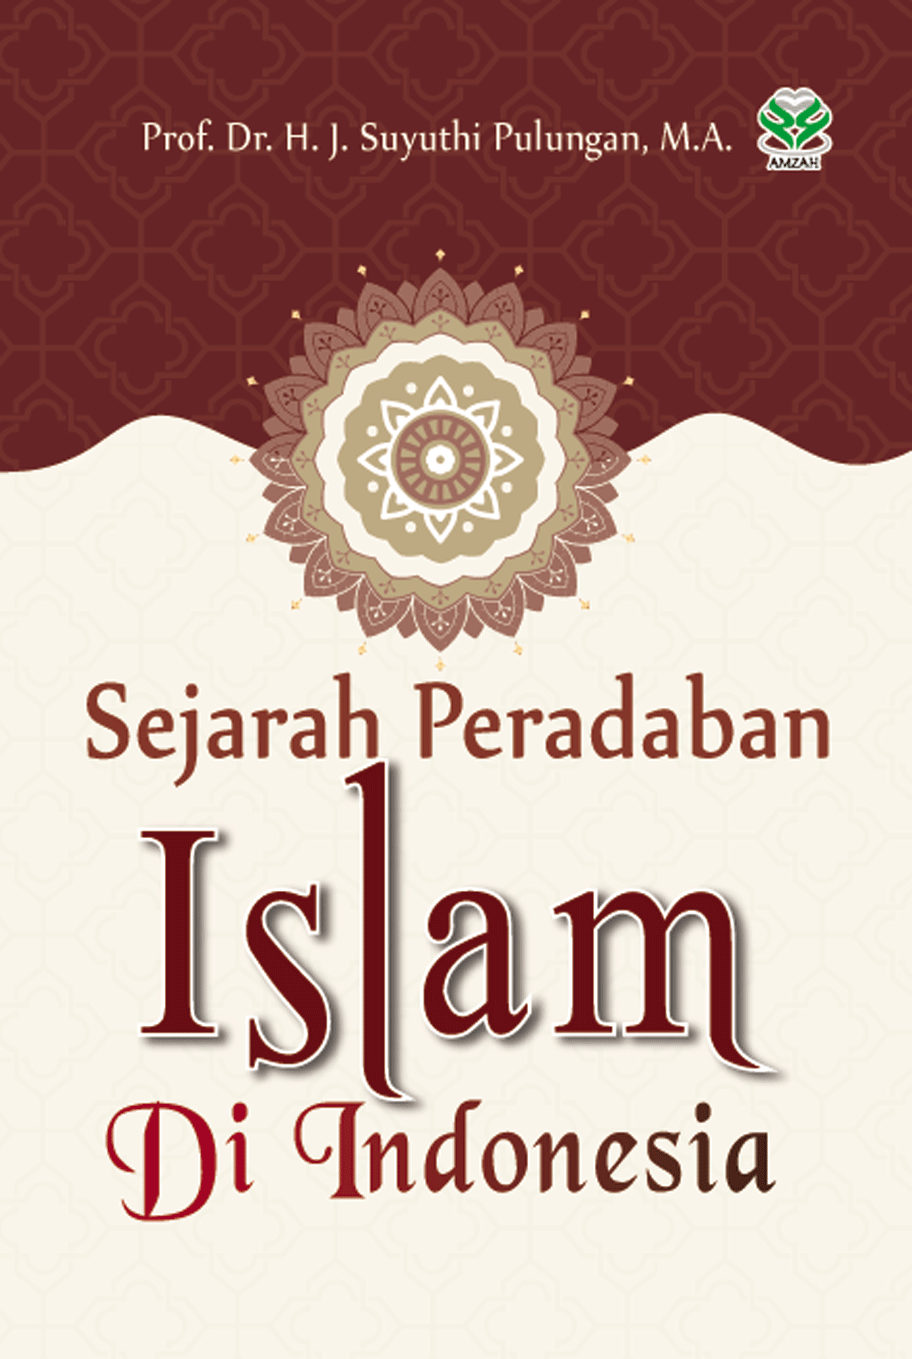 Sejarah Peradaban Islam di Indonesia